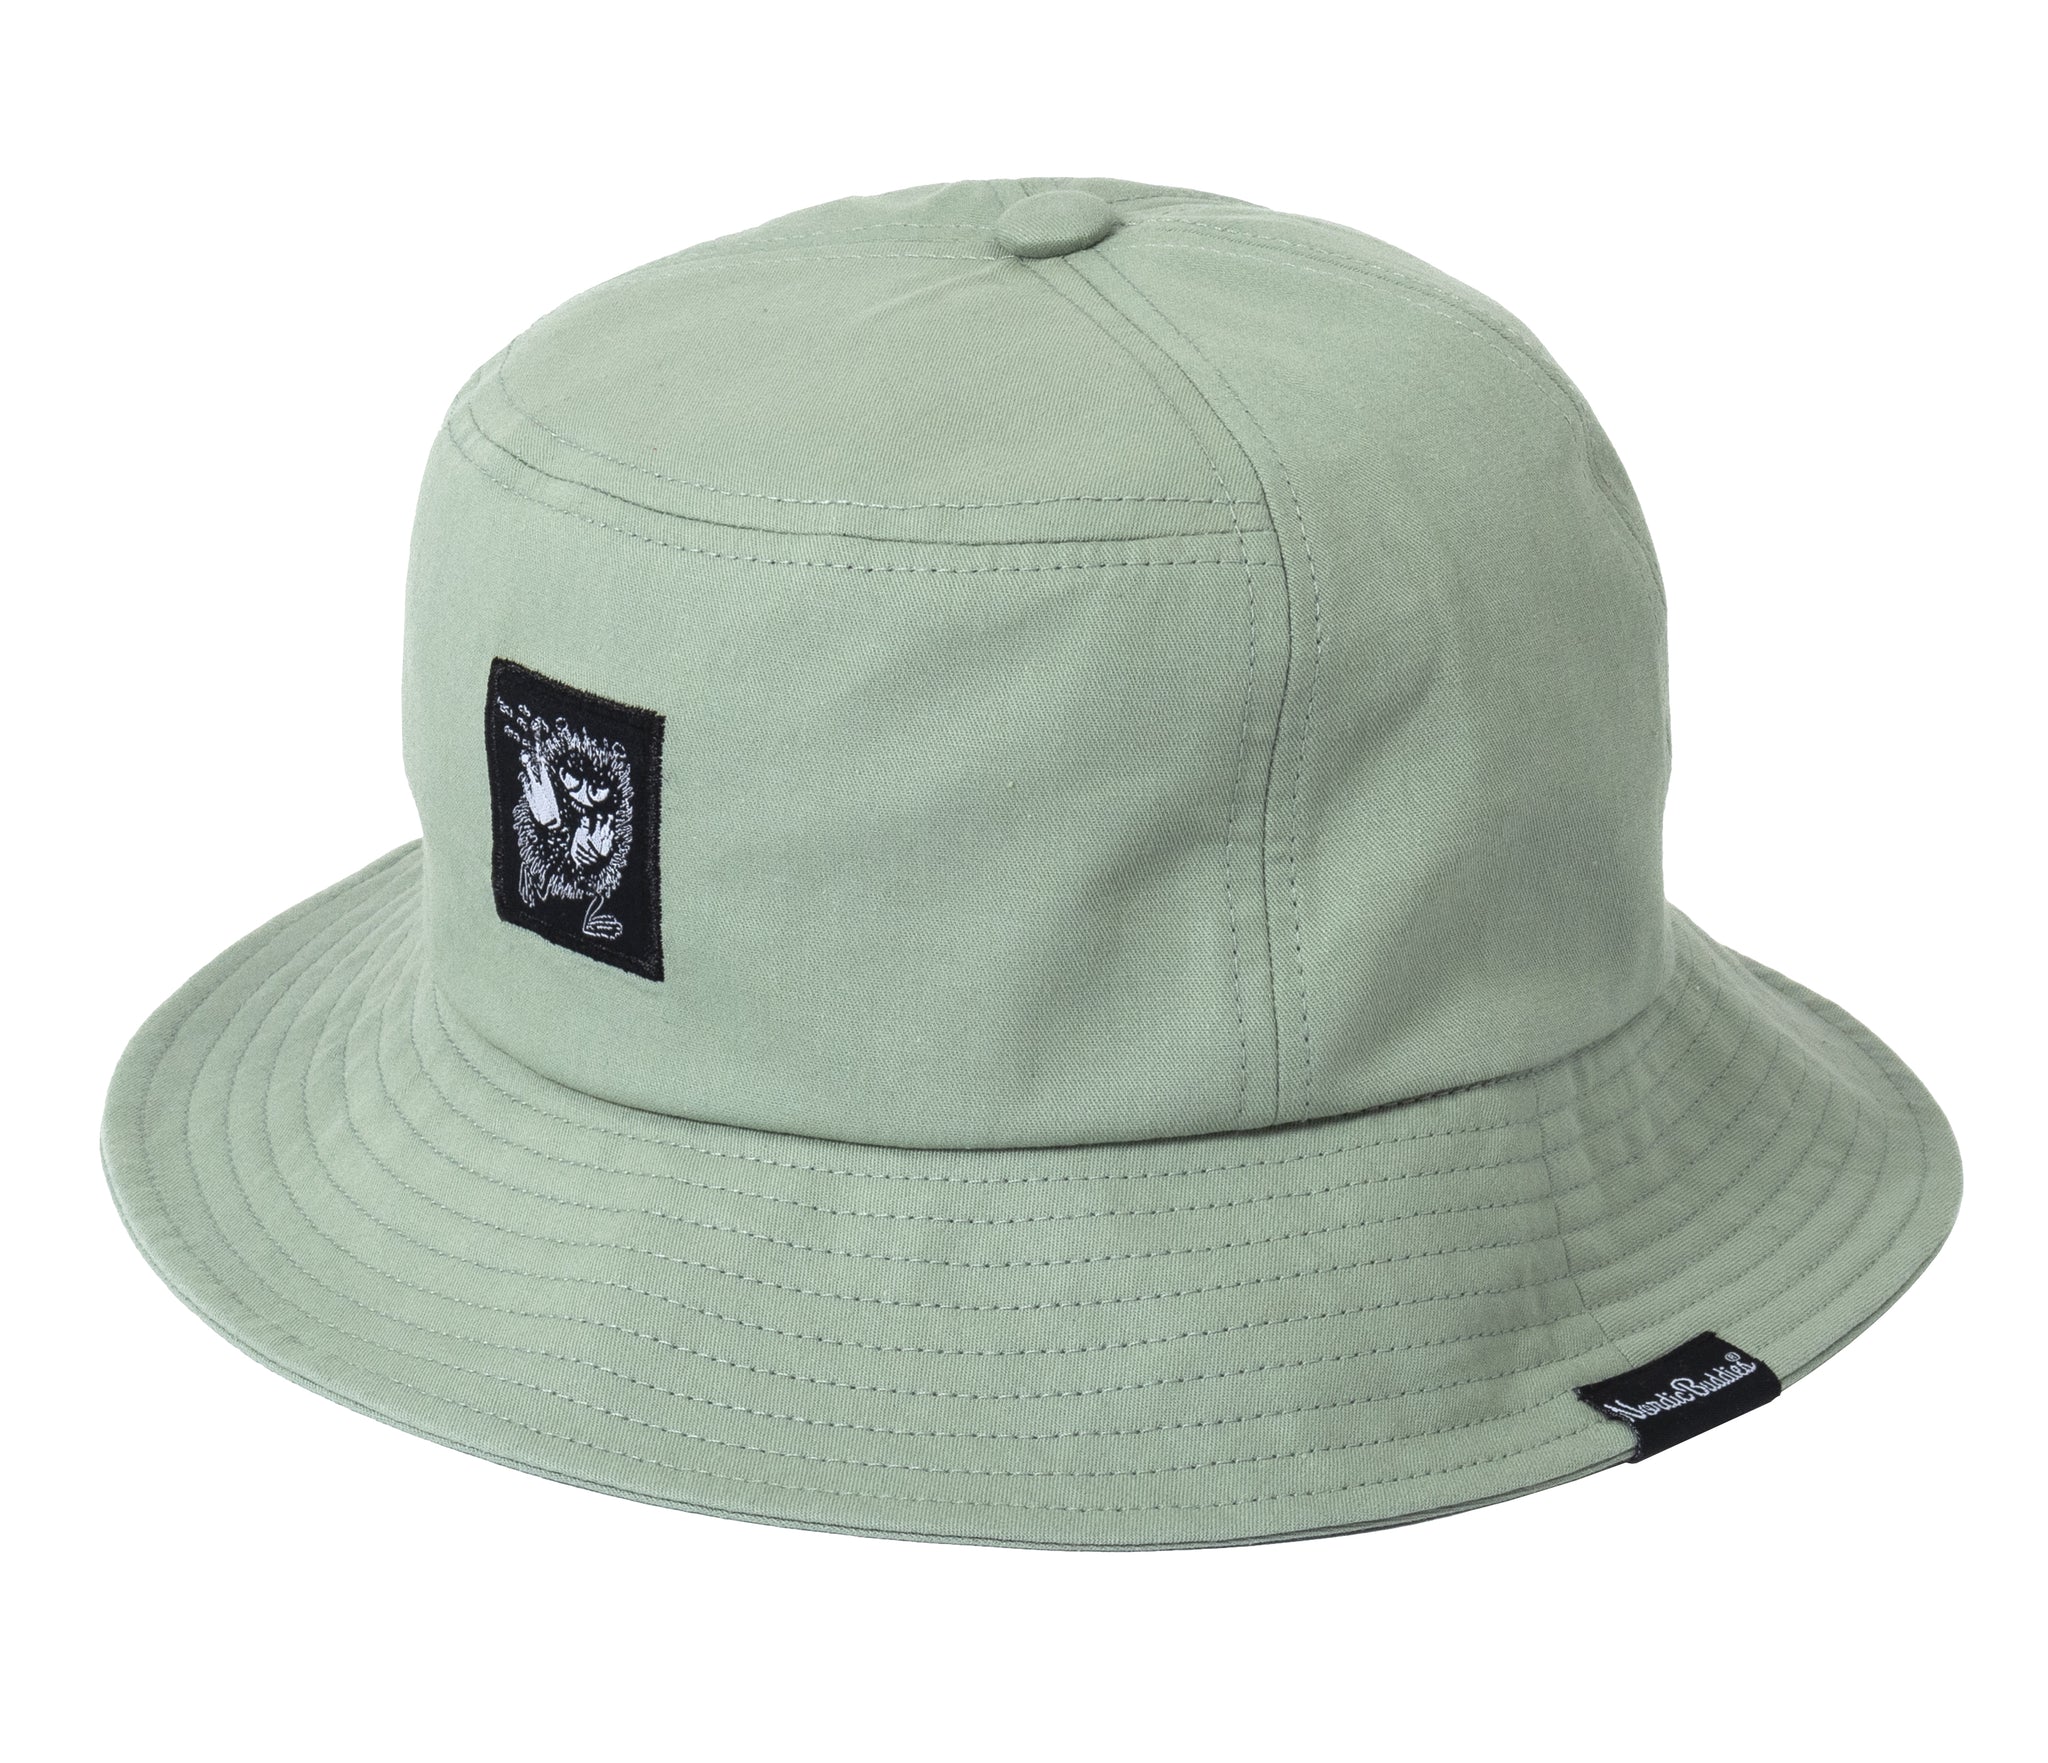 Moomin Bucket Hat Light Green Stinky | Muumi Kalastajahattu Vaaleanvihreä Haisuli